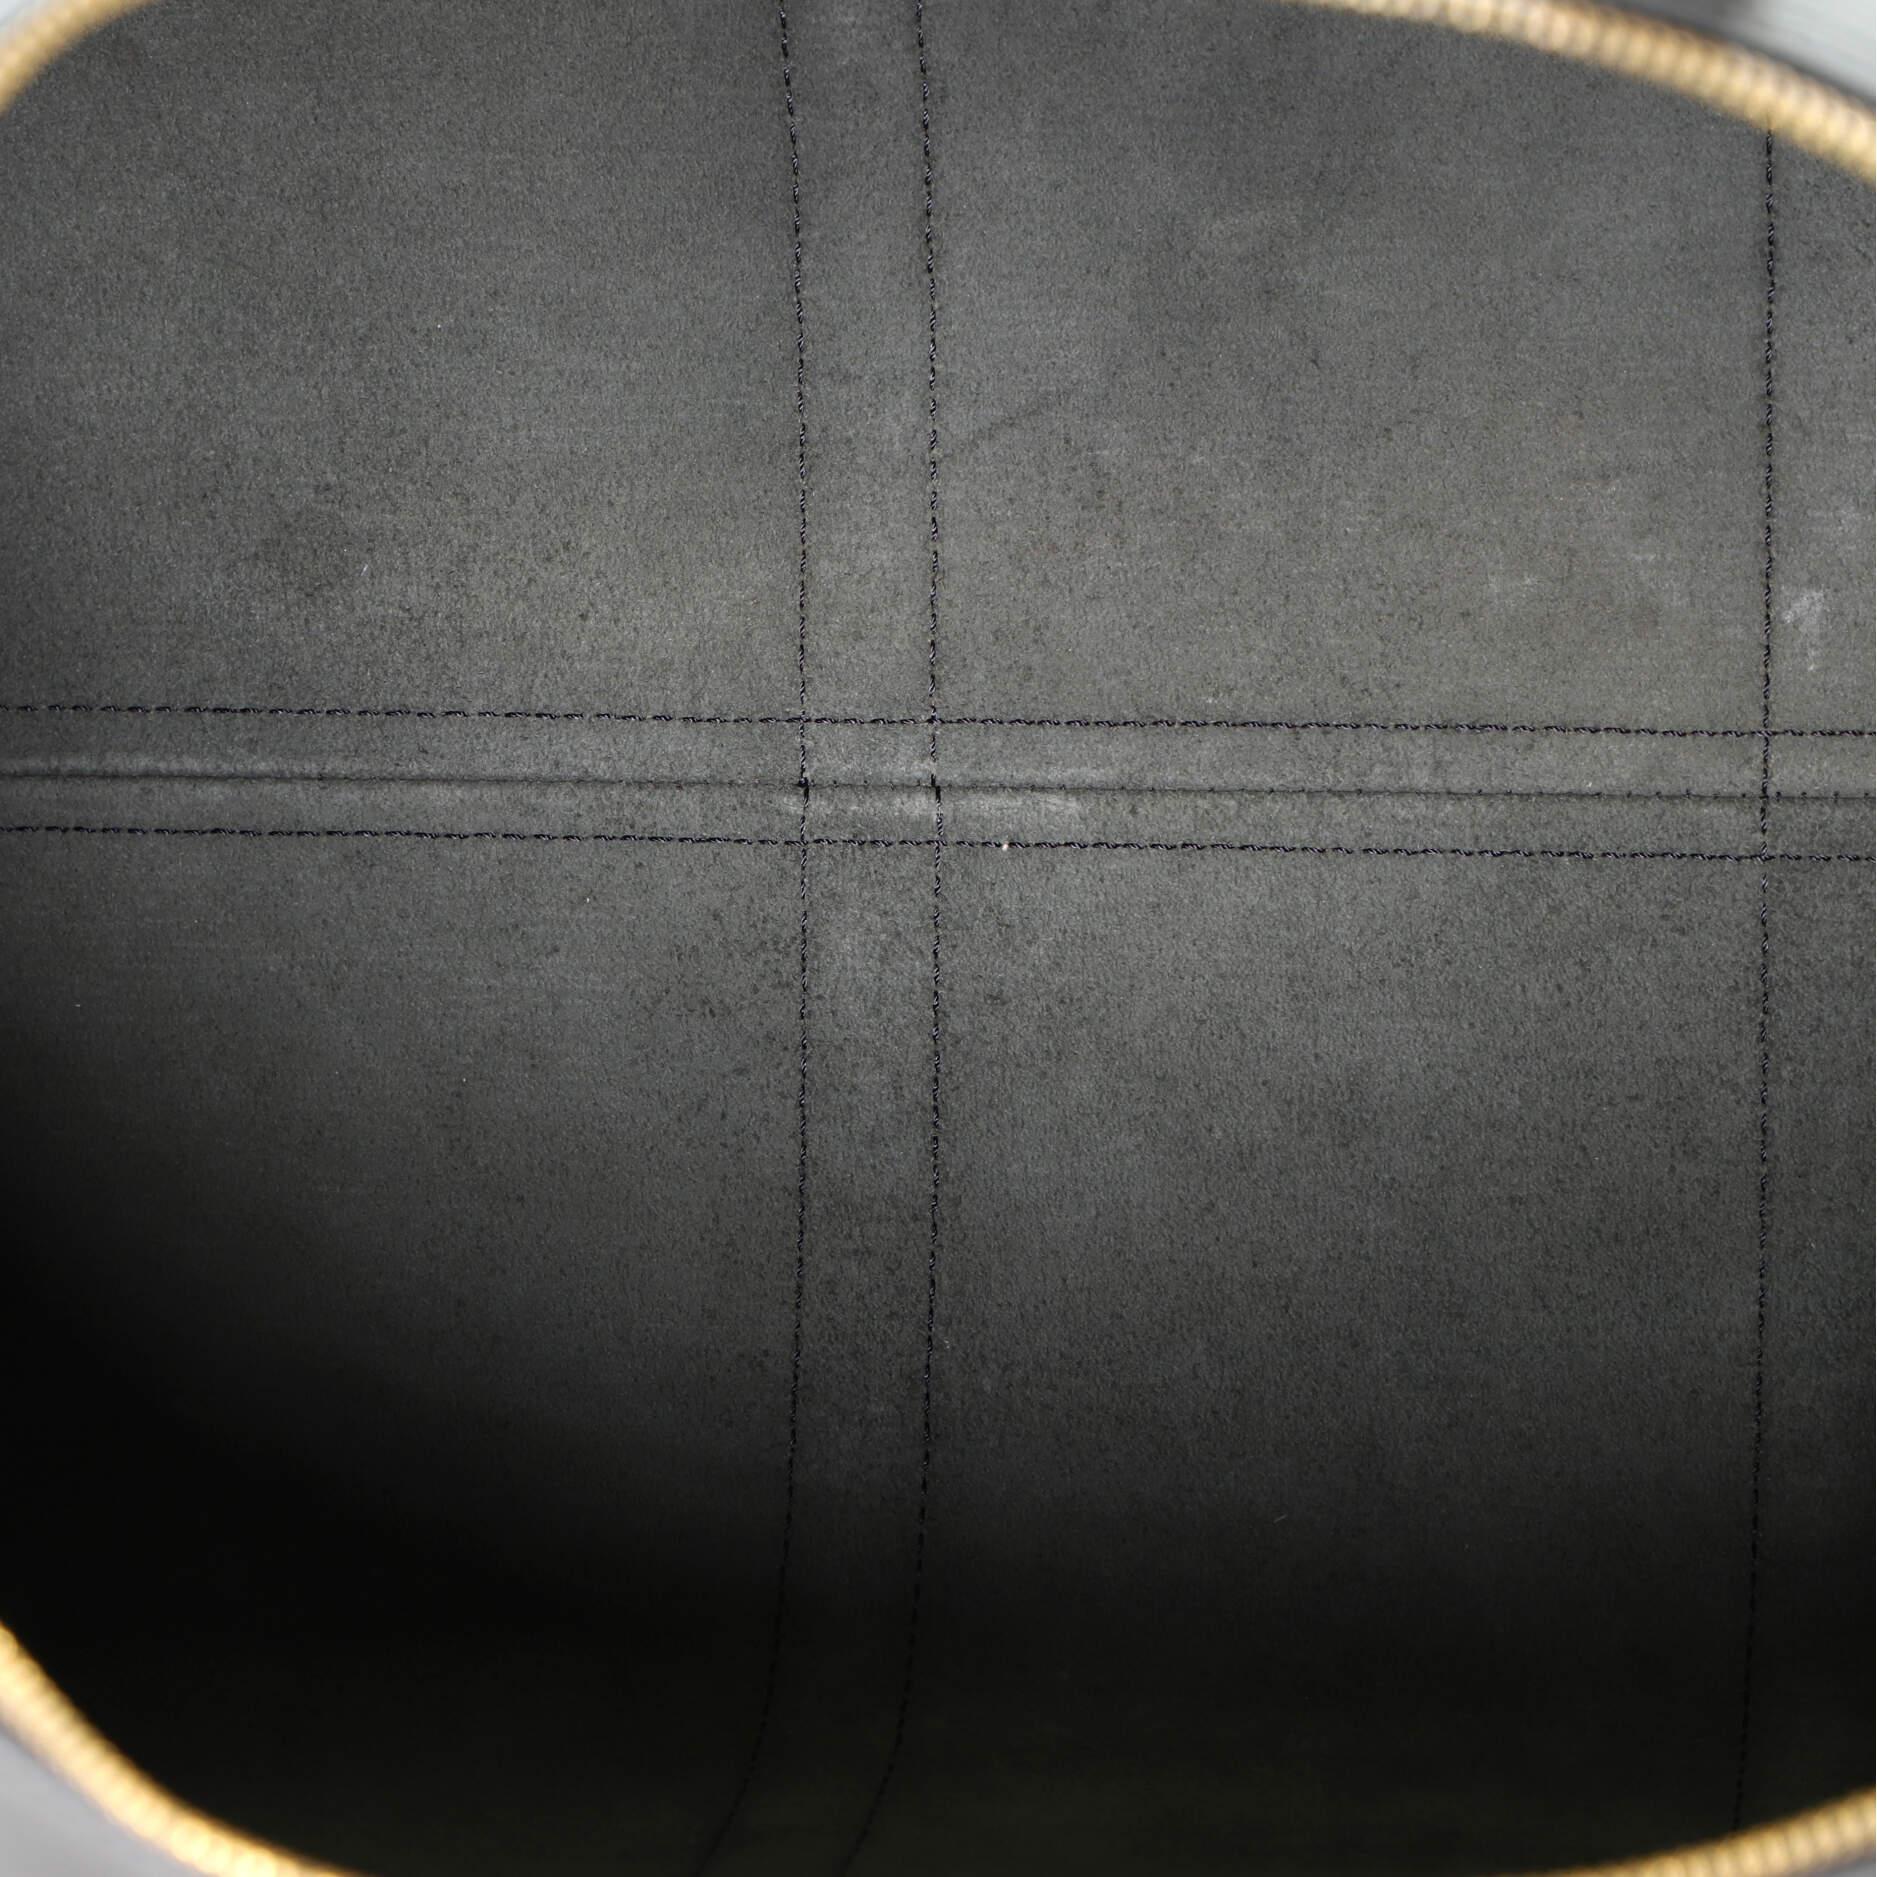 Louis Vuitton Keepall Bag Epi Leather 55 1